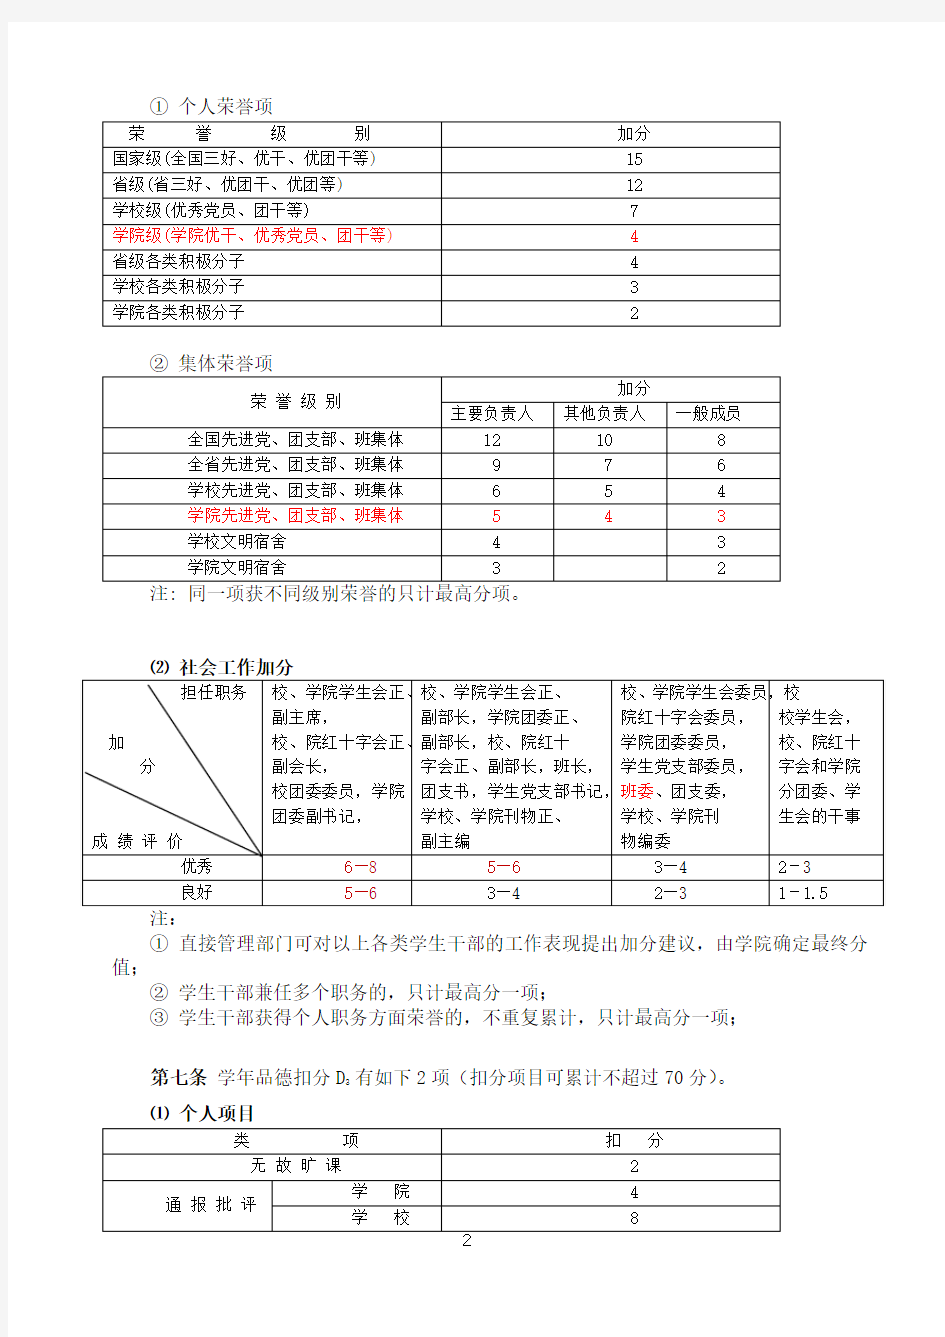 广东工业大学全日制本专科学生综合素质测评办法(第二稿)